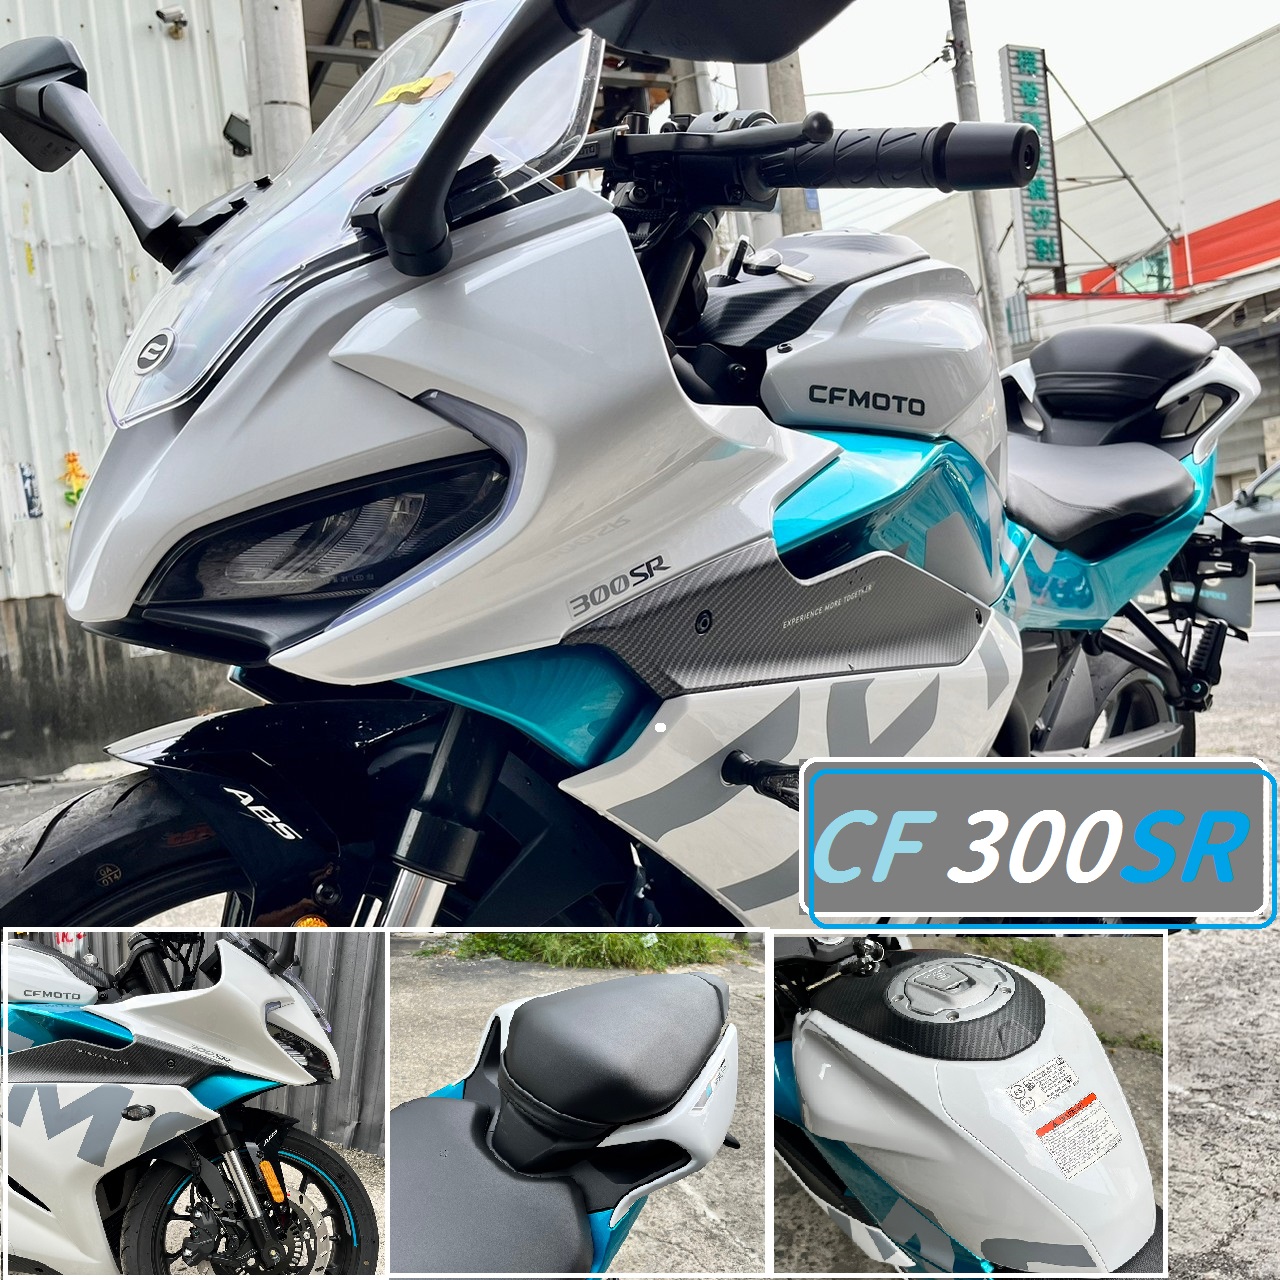 【飛翔國際】CFMOTO 300SR - 「Webike-摩托車市」 【售】仿賽 新車 2022 春風 CFMOTO 300SR RACING 賽道版 48期零利率 黃牌輕檔